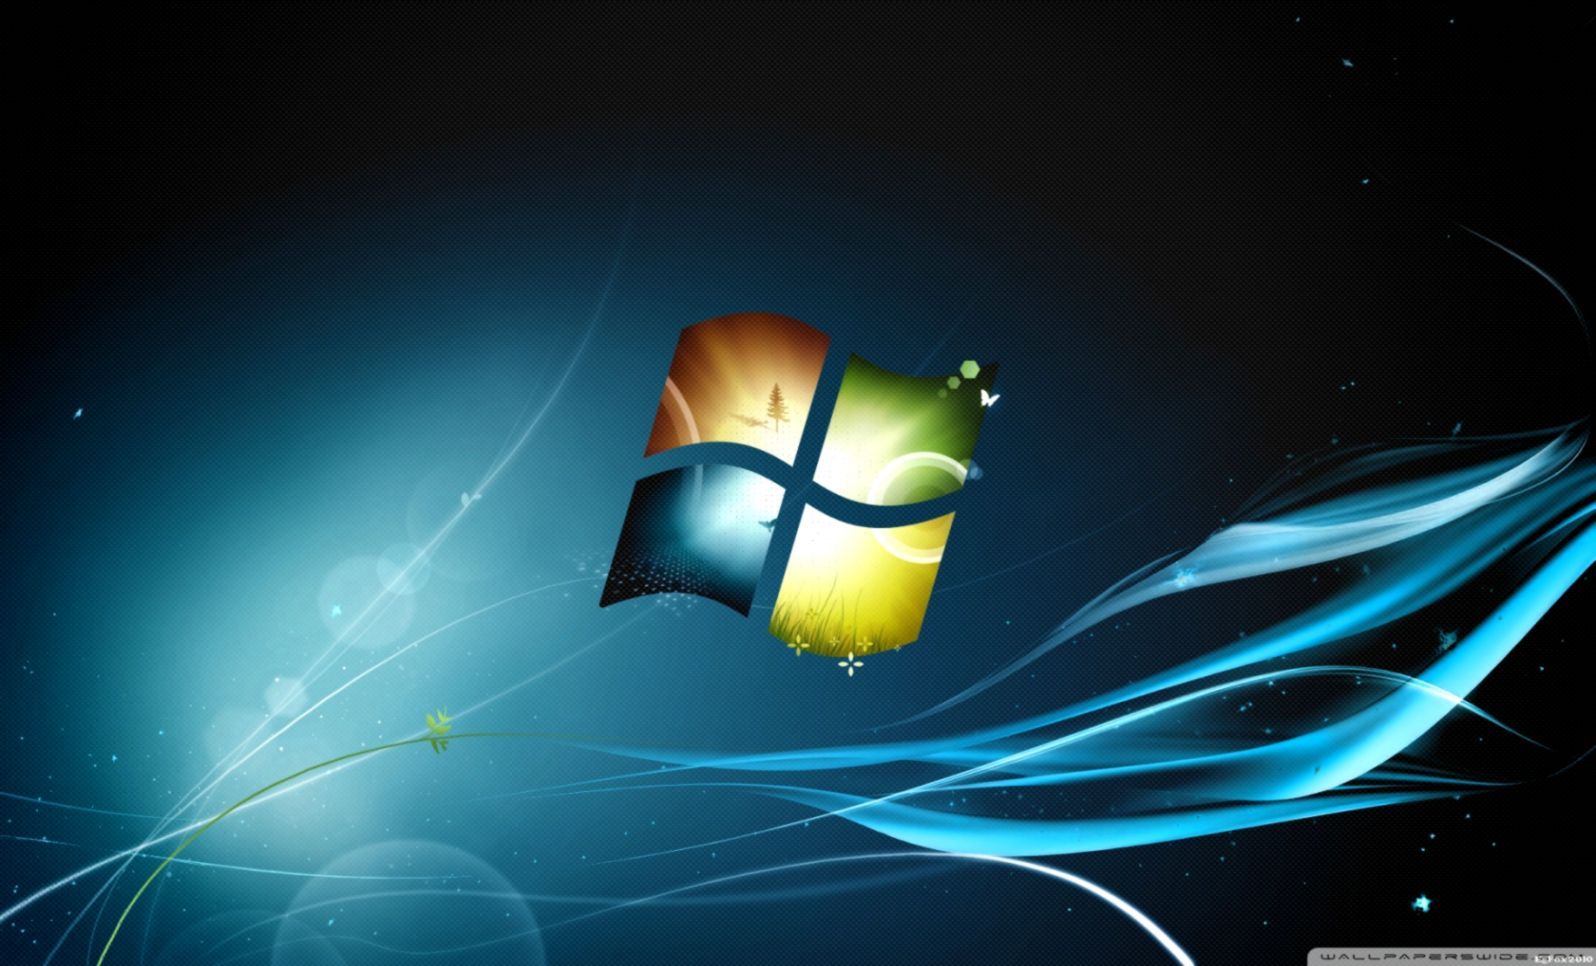 Fondos de pantalla de Windows 7 - FondosMil